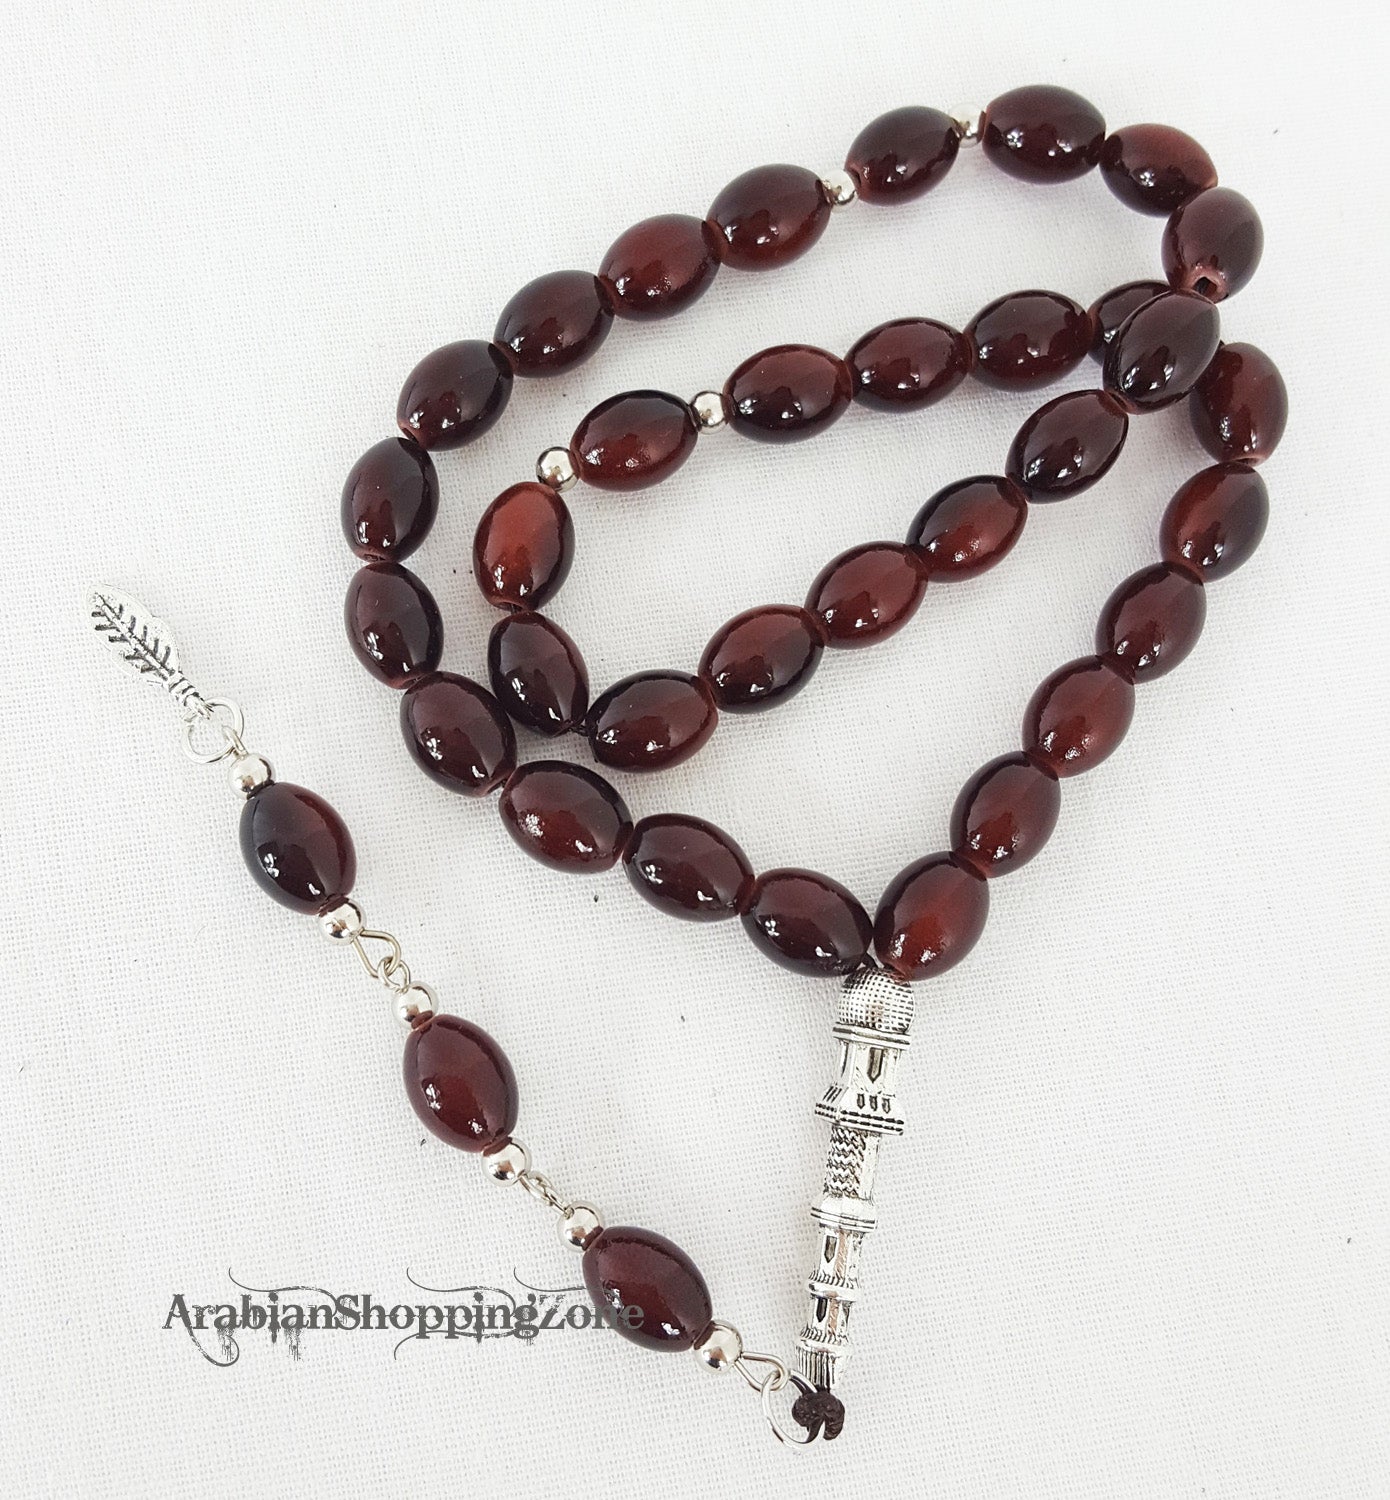 TESBIH Islamic Prayer Beads